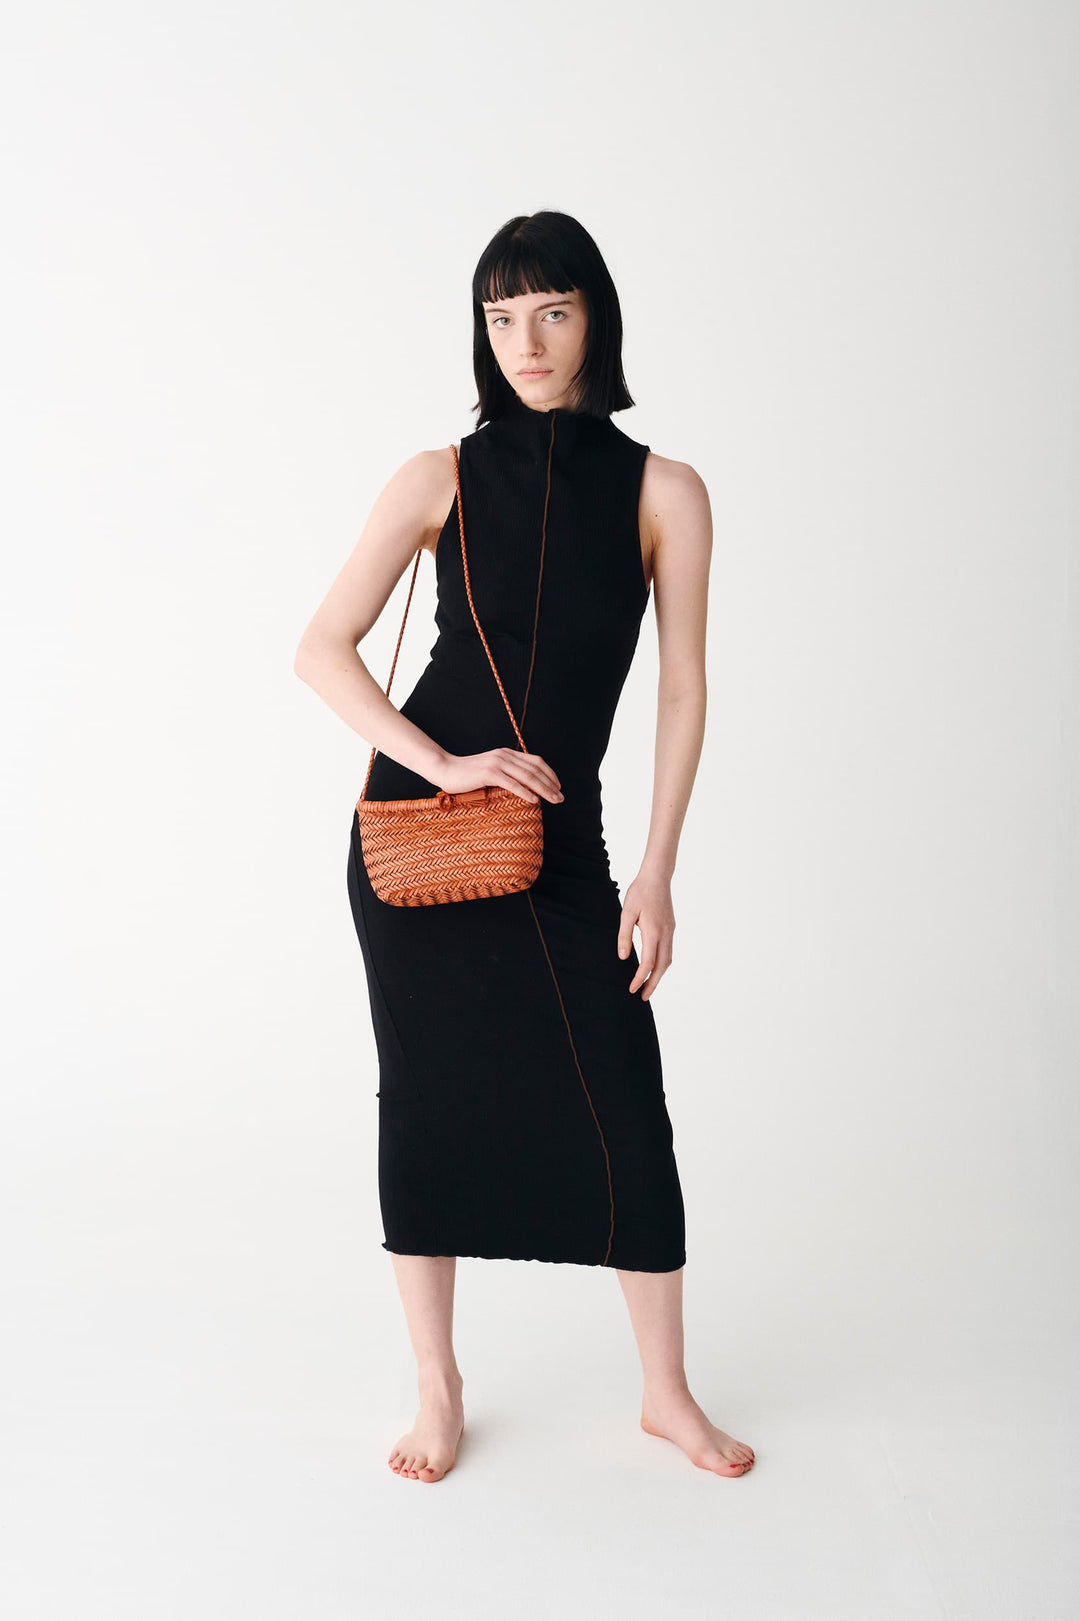 Dragon Diffusion woven leather bag handmade - Minsu Bag Tan